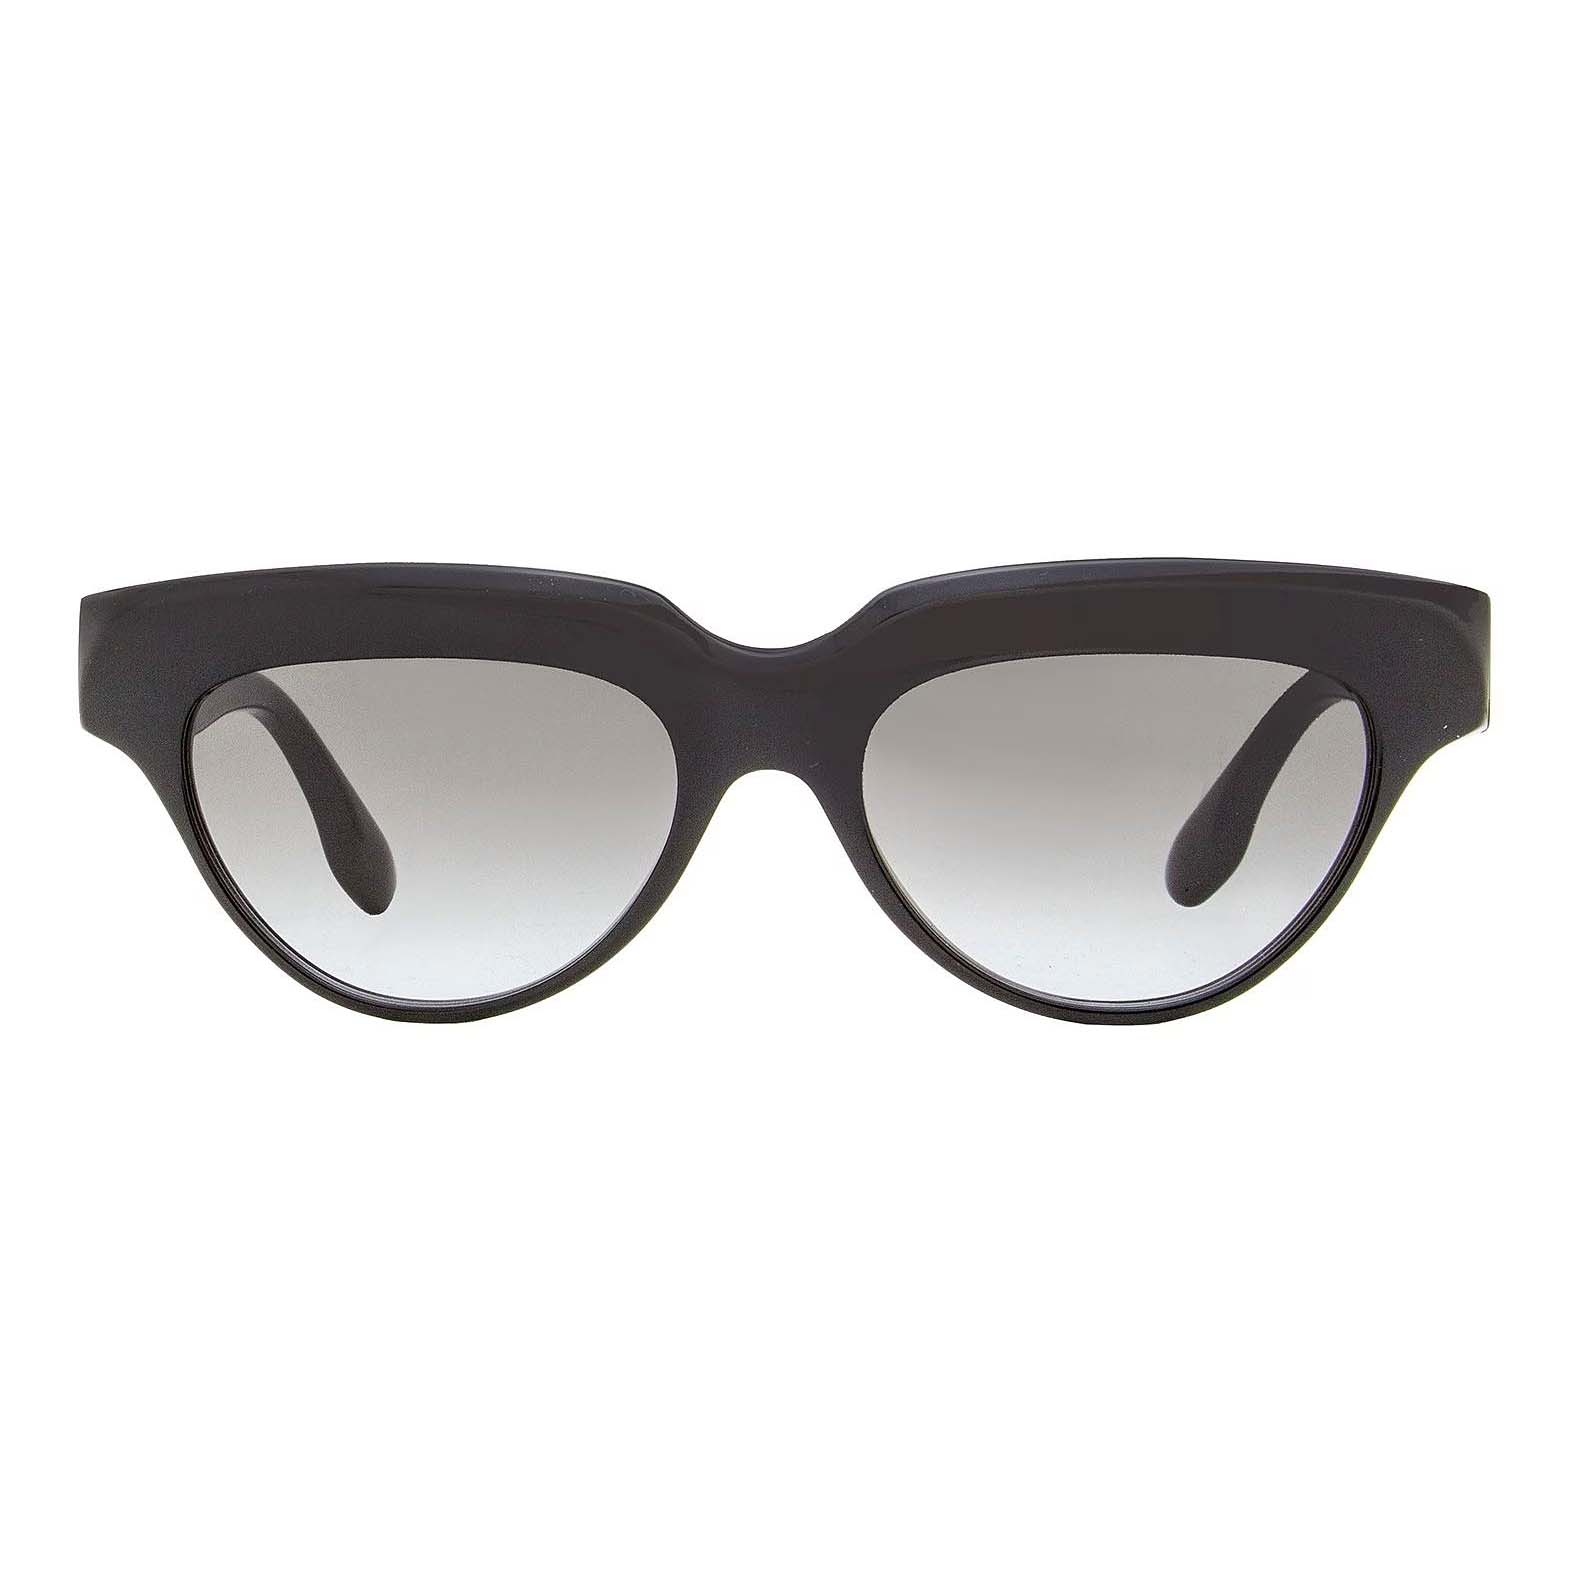 Солнцезащитные очки Victoria Beckham Cateye VB602S, черный солнцезащитные очки tropical кошачий глаз оправа пластик градиентные для женщин черный